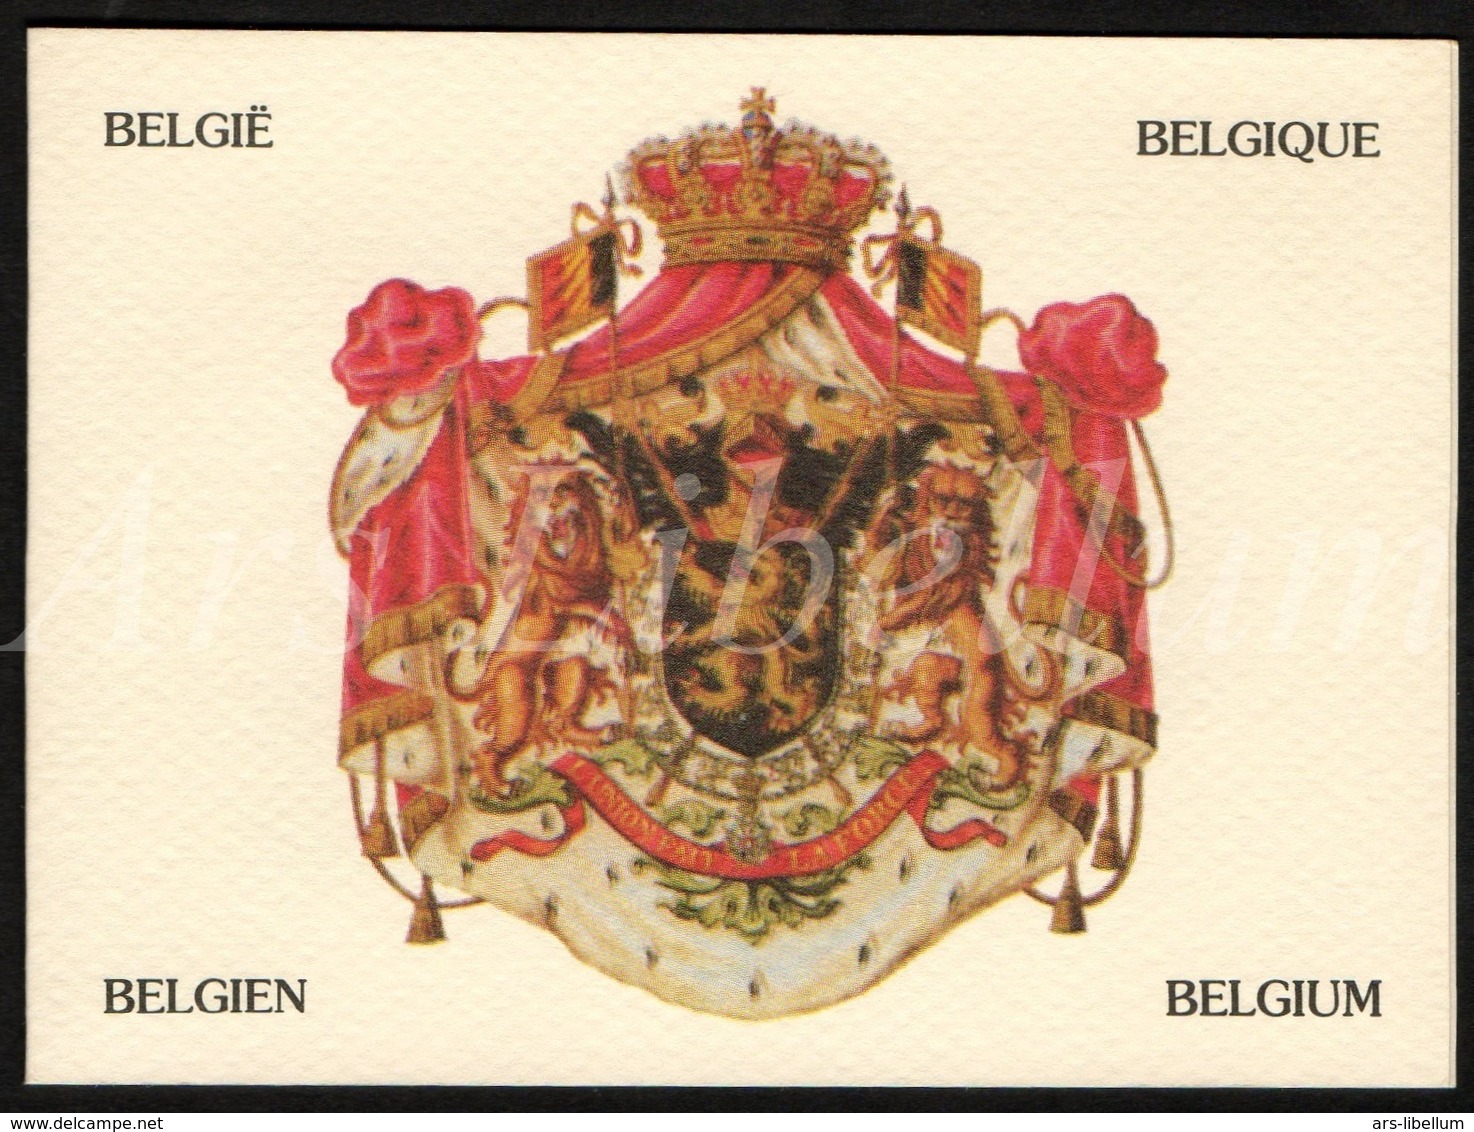 ROYALTY / Belgique / België / Famille Royale / Dynastie Belge / Koningshuis / Telefoonkaart / Belgacom / Telecard - Ohne Chip